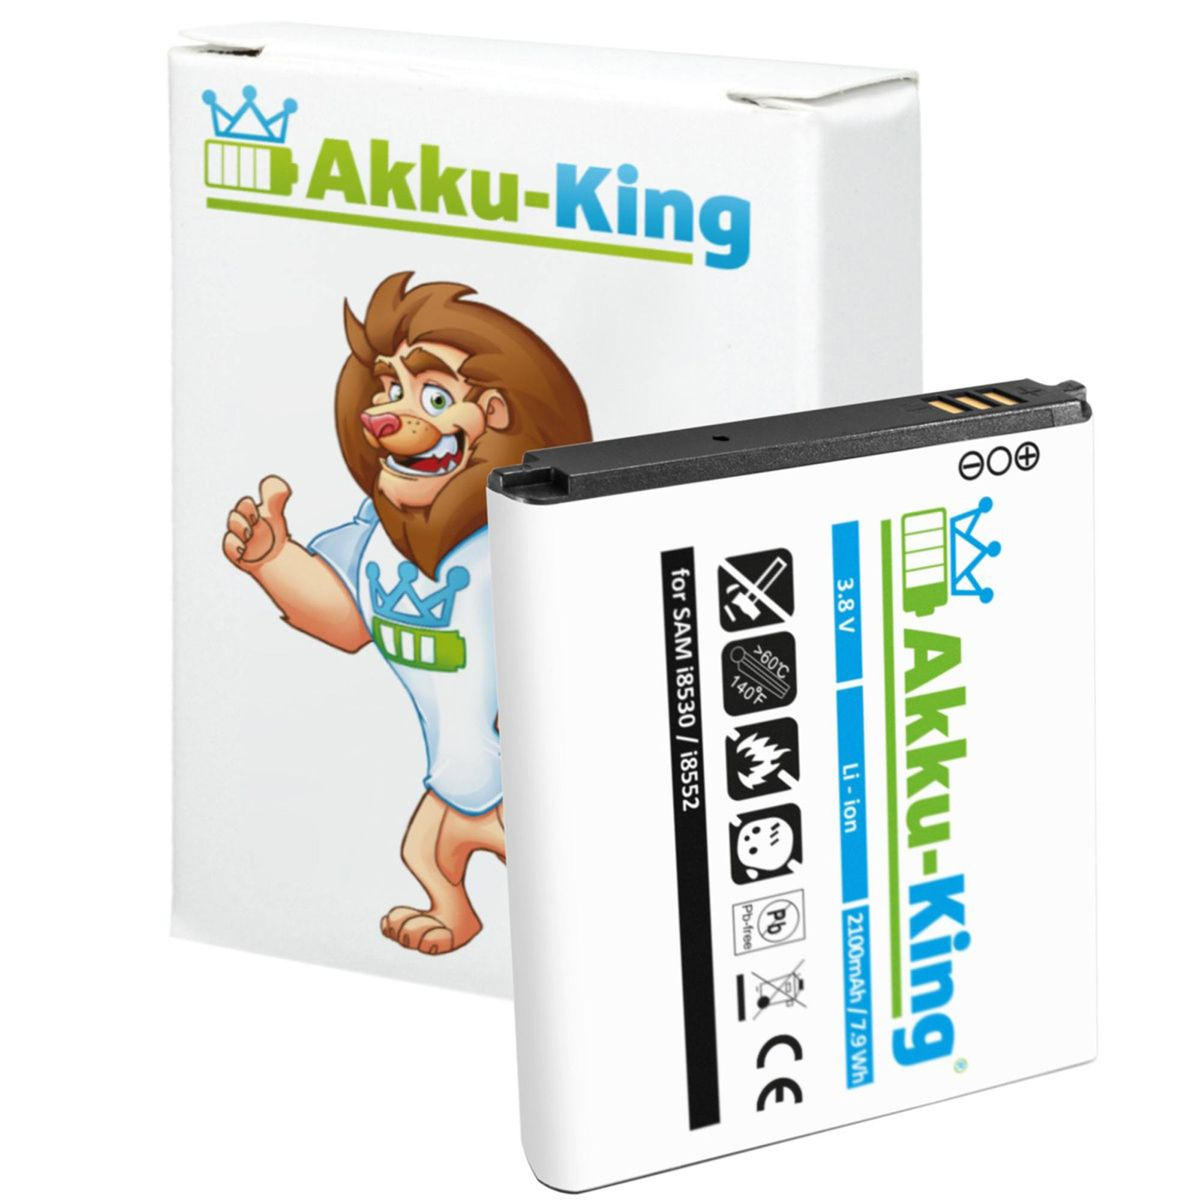 AKKU-KING Akku kompatibel mit Samsung Li-Ion EB585157LU 3.8 2100mAh Handy-Akku, Volt